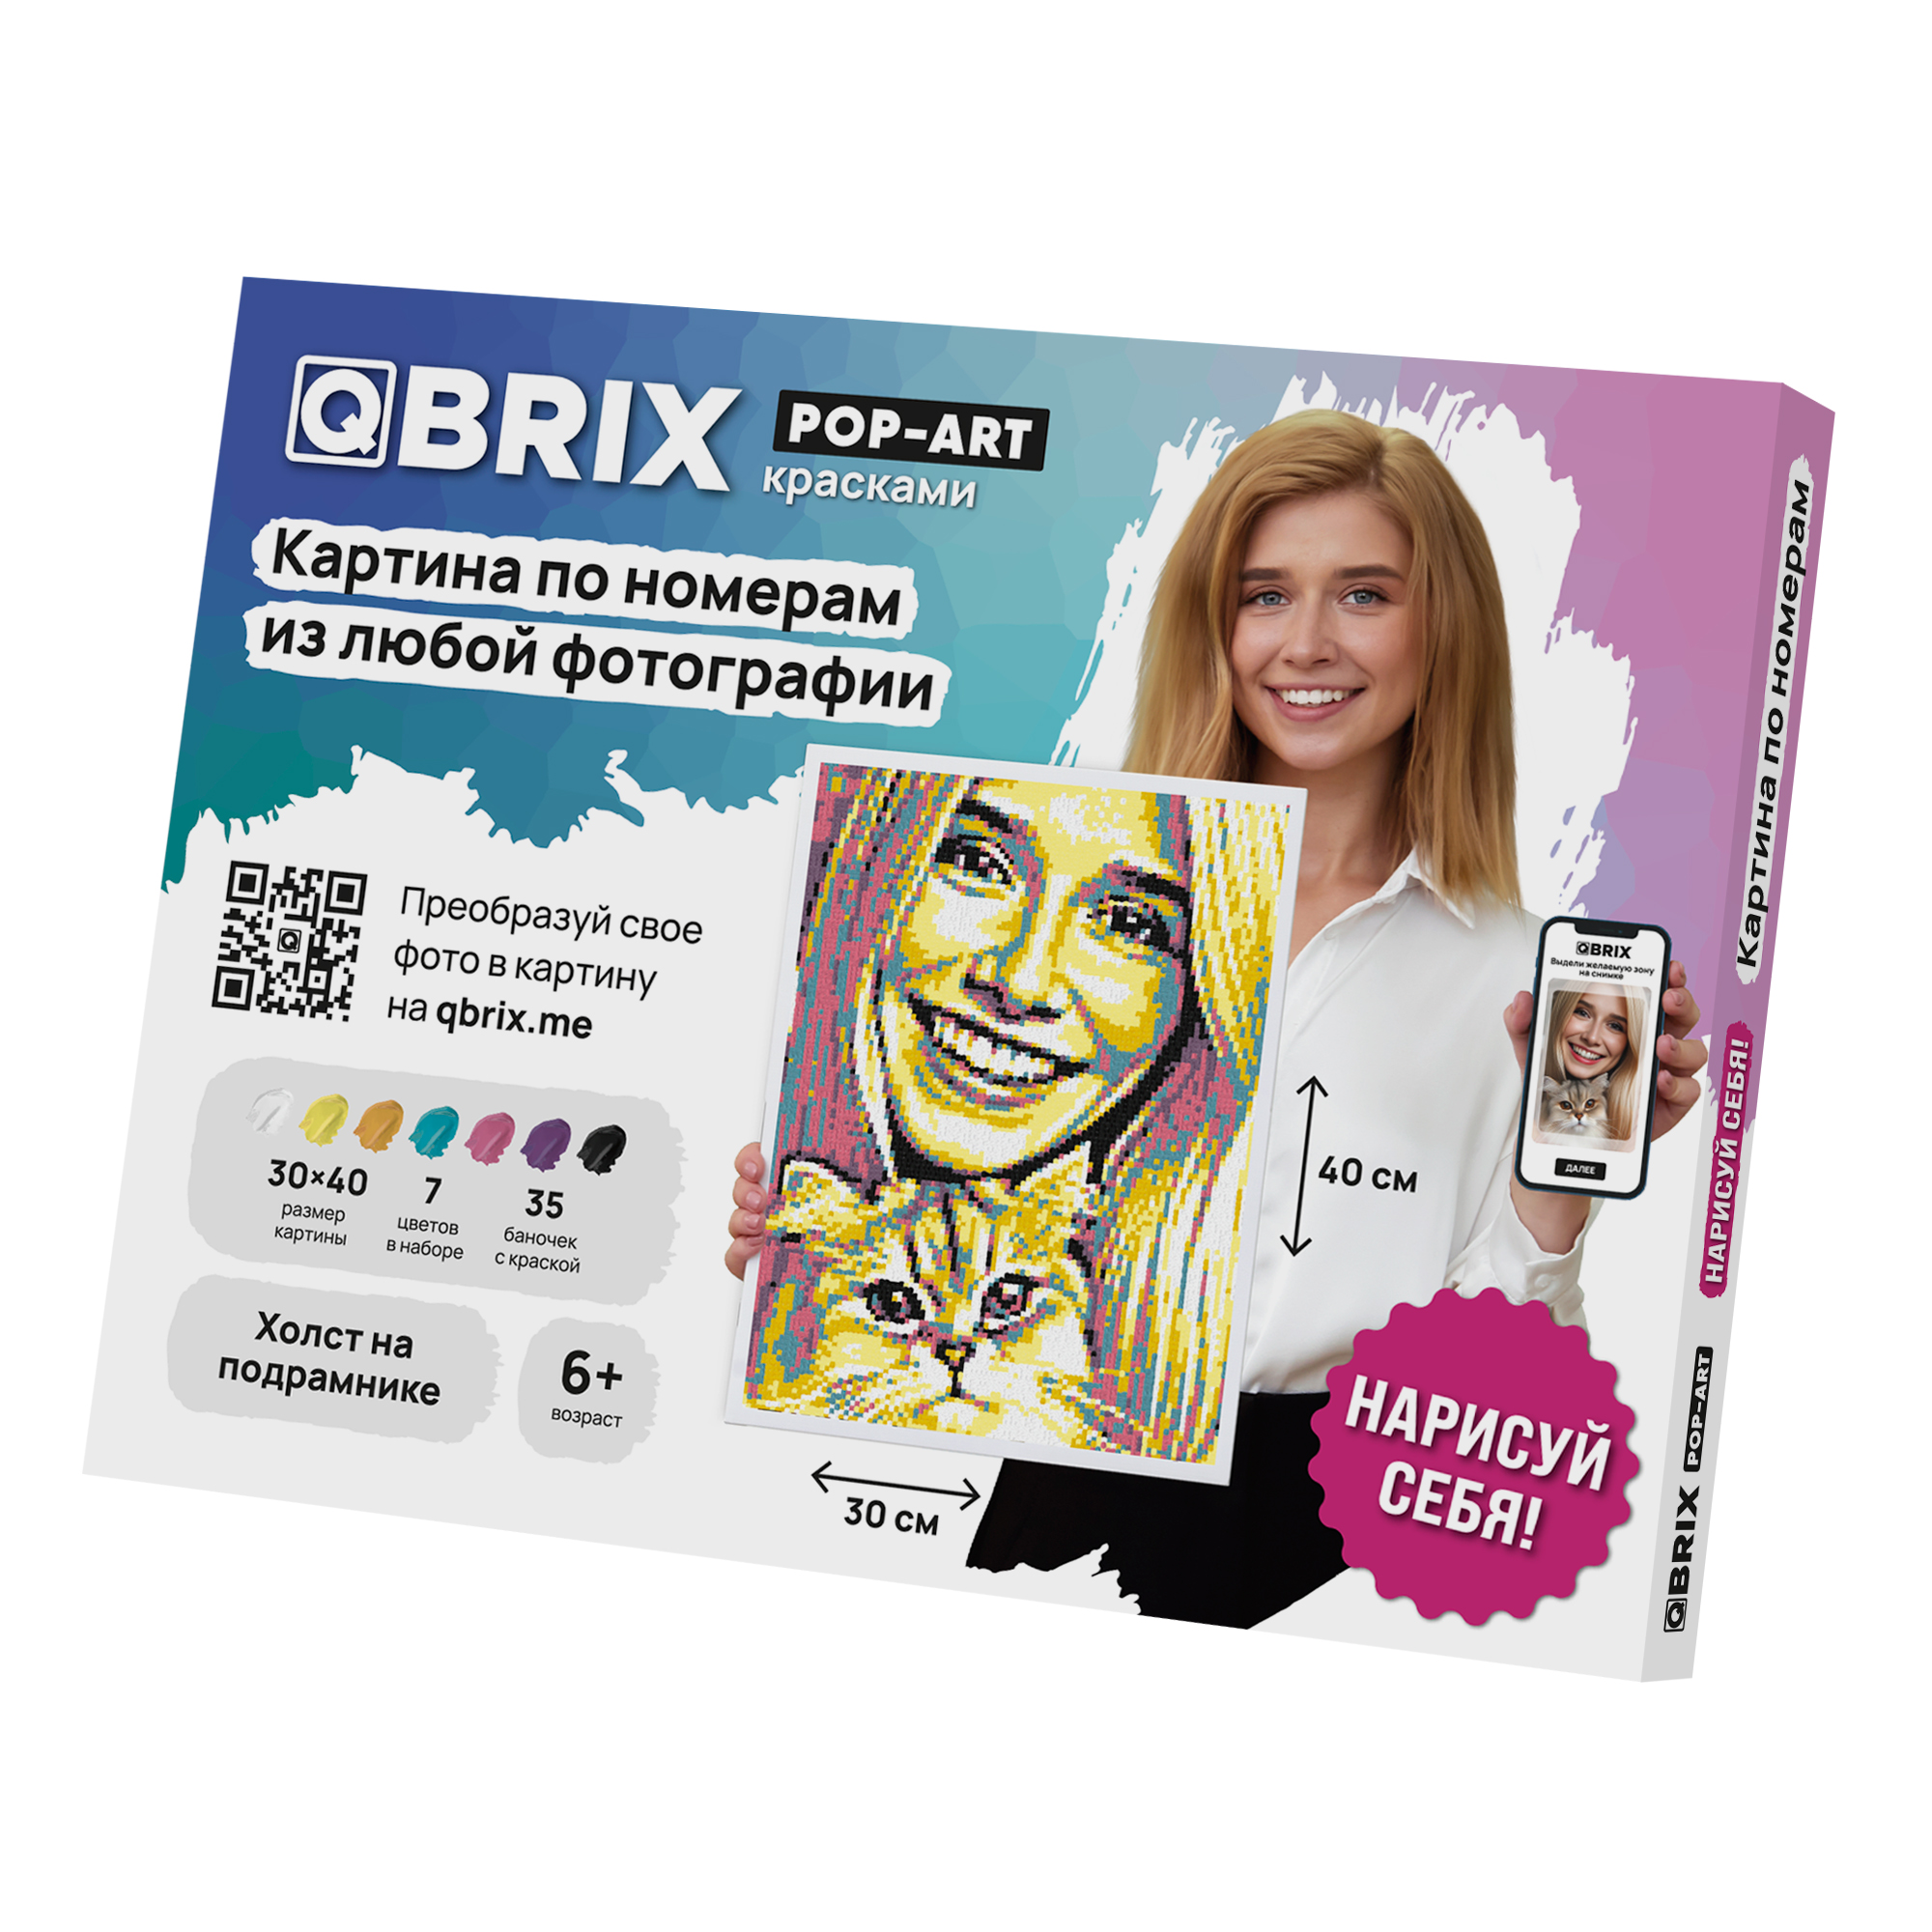 Картина по номерам из любой фотографии (фото) QBRIX Pop-art, 30х40 см, 7 цветов